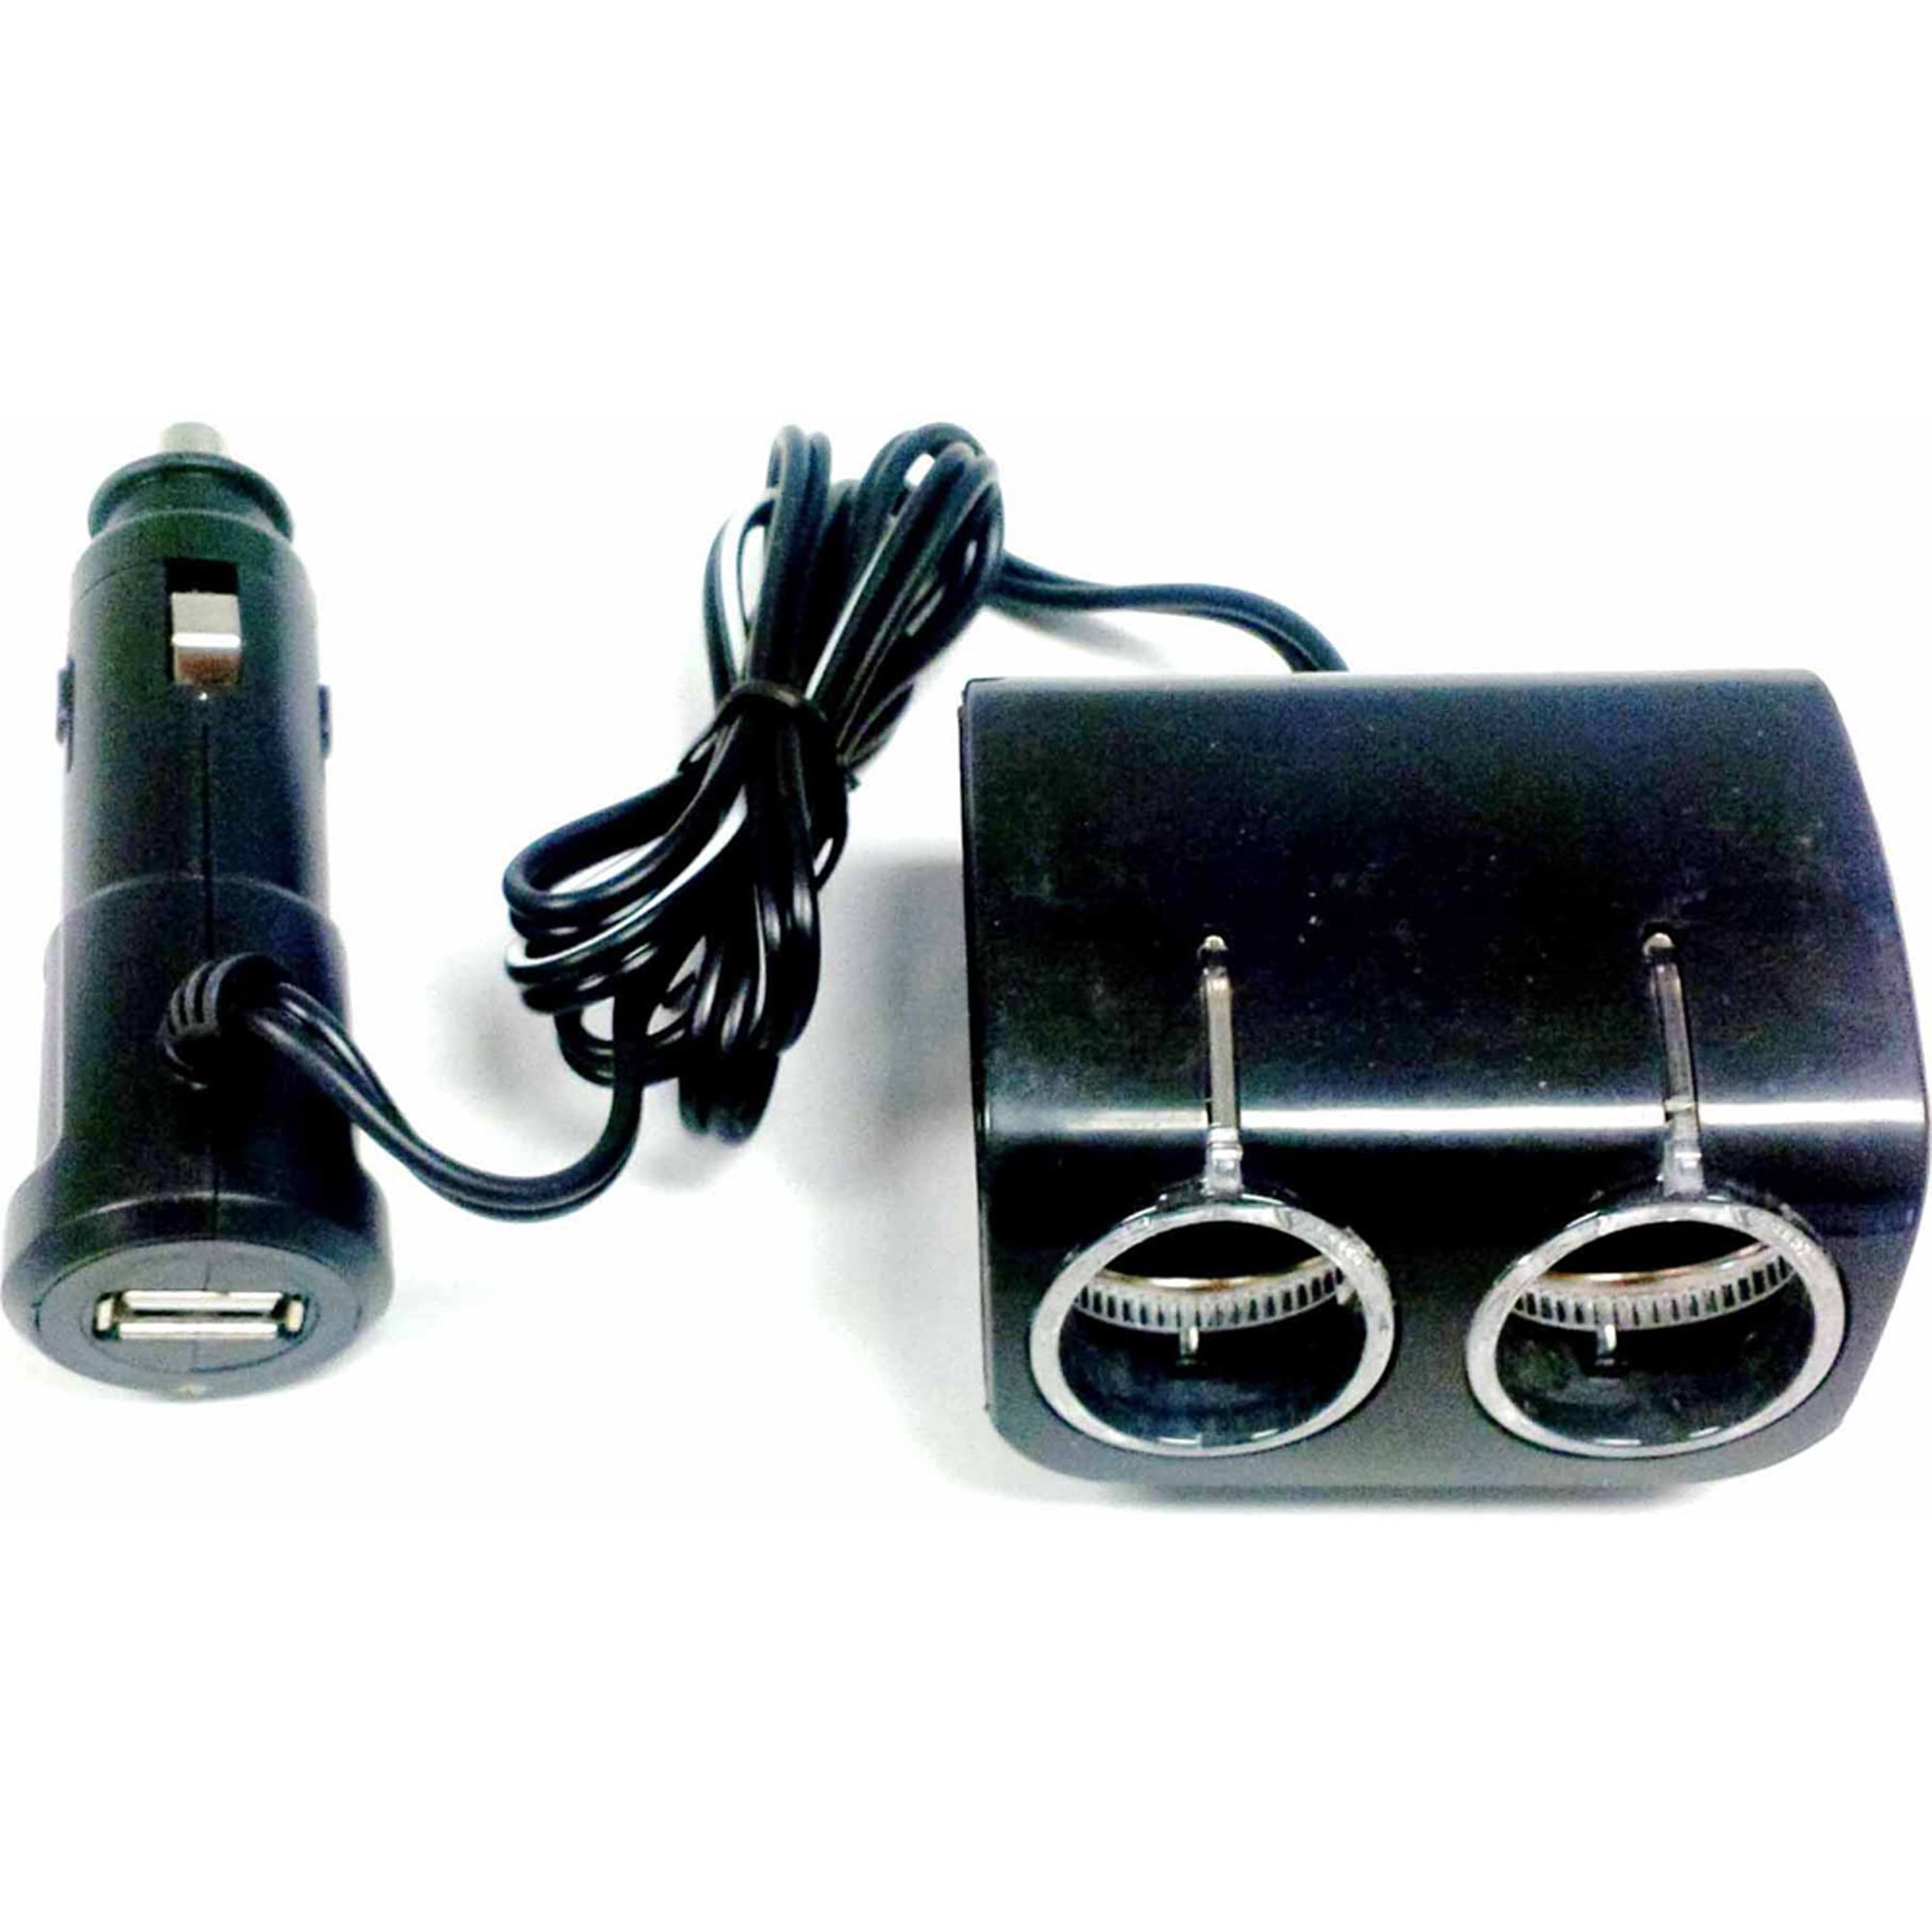 Buy Voltage adapter with cigarette lighter socket Botland